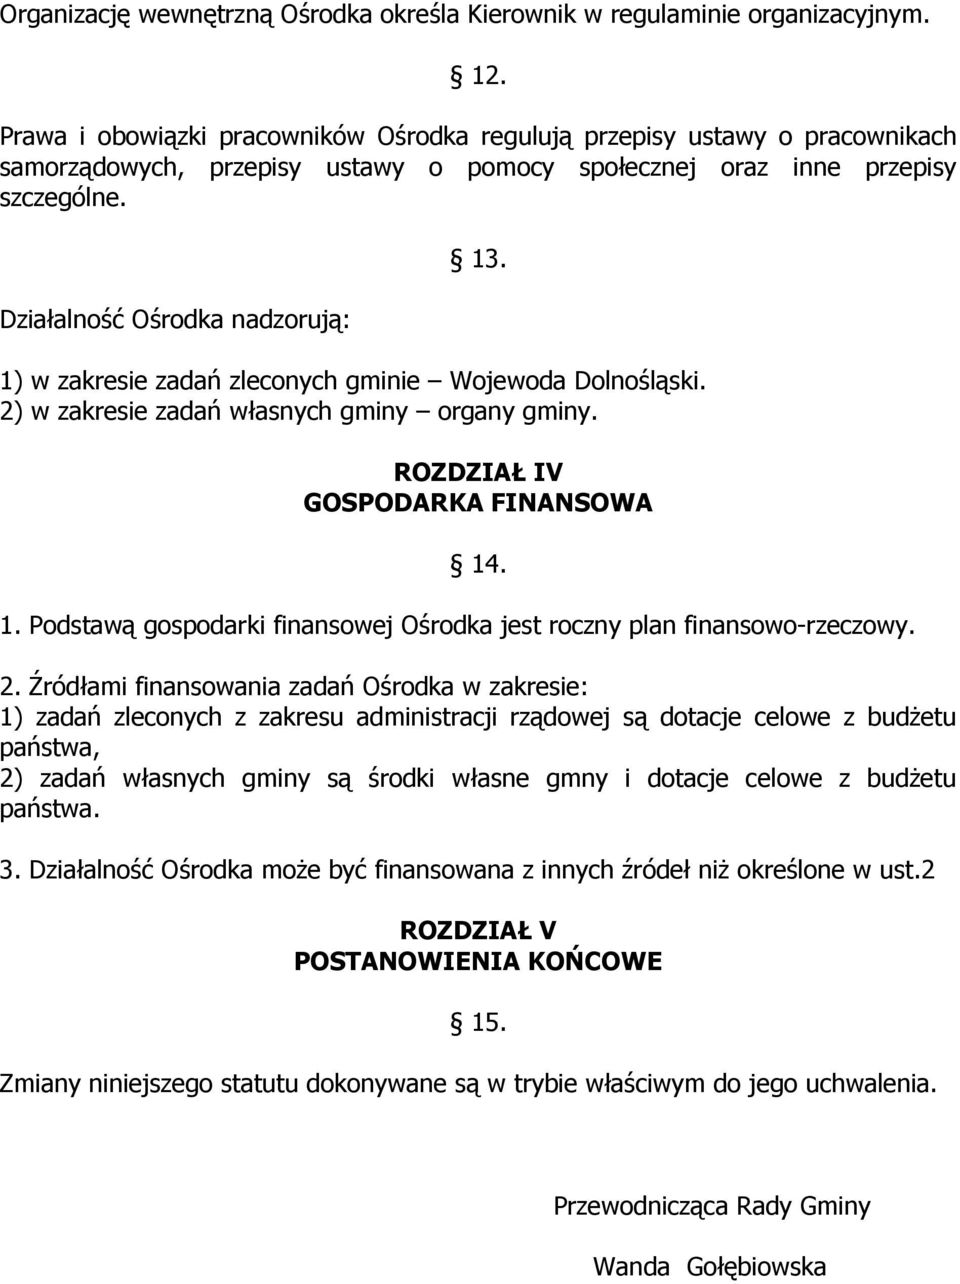 1) w zakresie zadań zleconych gminie Wojewoda Dolnośląski. 2) w zakresie zadań własnych gminy organy gminy. ROZDZIAŁ IV GOSPODARKA FINANSOWA 14